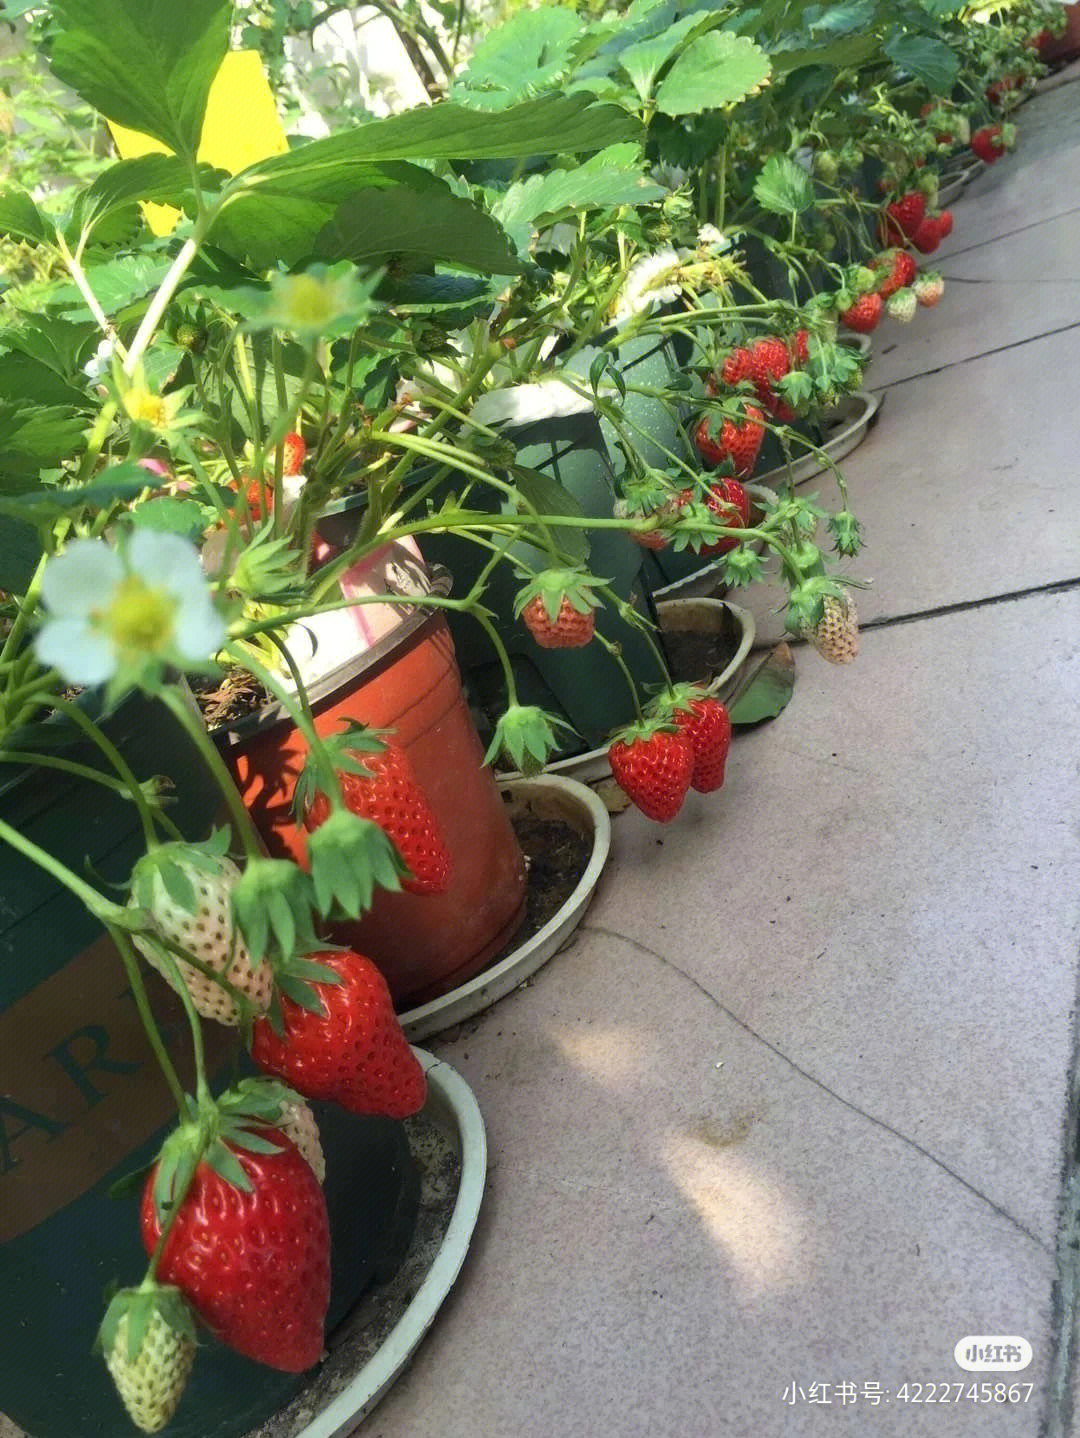 小红书姐妹种的草莓and我种的草莓